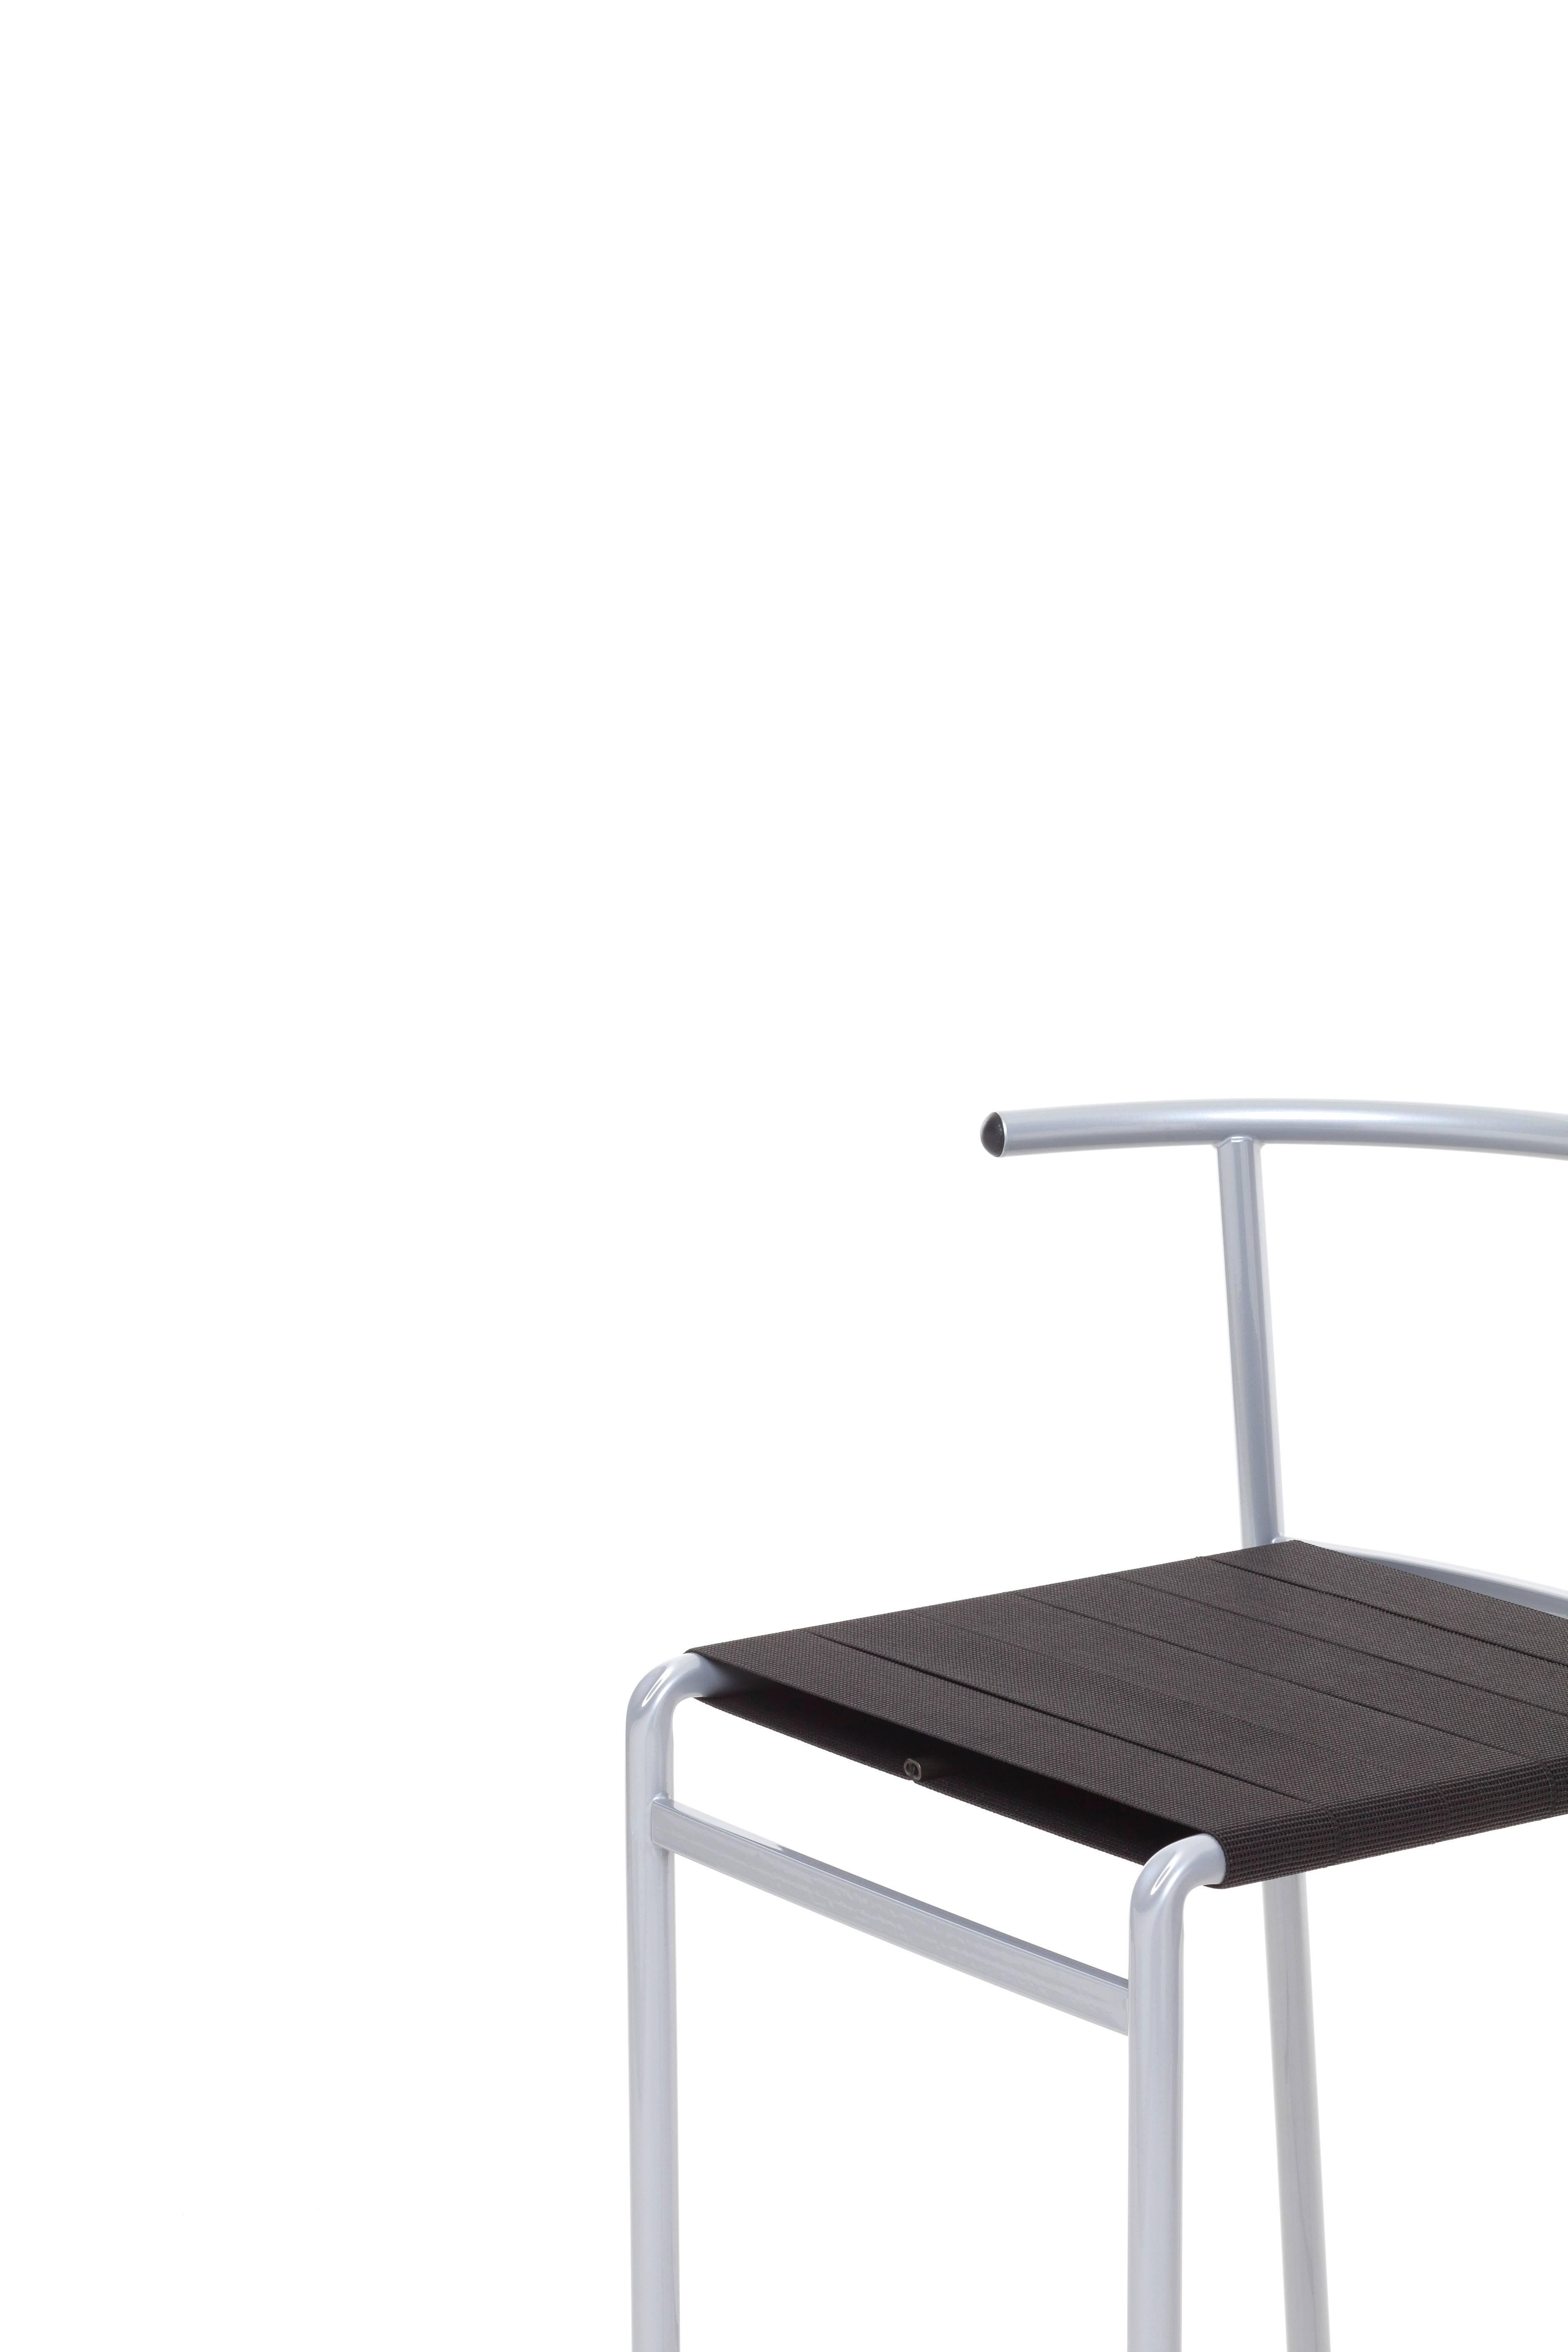 Ein Stuhl, der von dem berühmtesten französischen Designer für das damals berühmteste französische Café entworfen wurde: Das Café Costes in Paris. Dieser stapelbare Stuhl ist stabil und bequem: der ideale Stuhl für ein Café. Der Café Chair wurde in